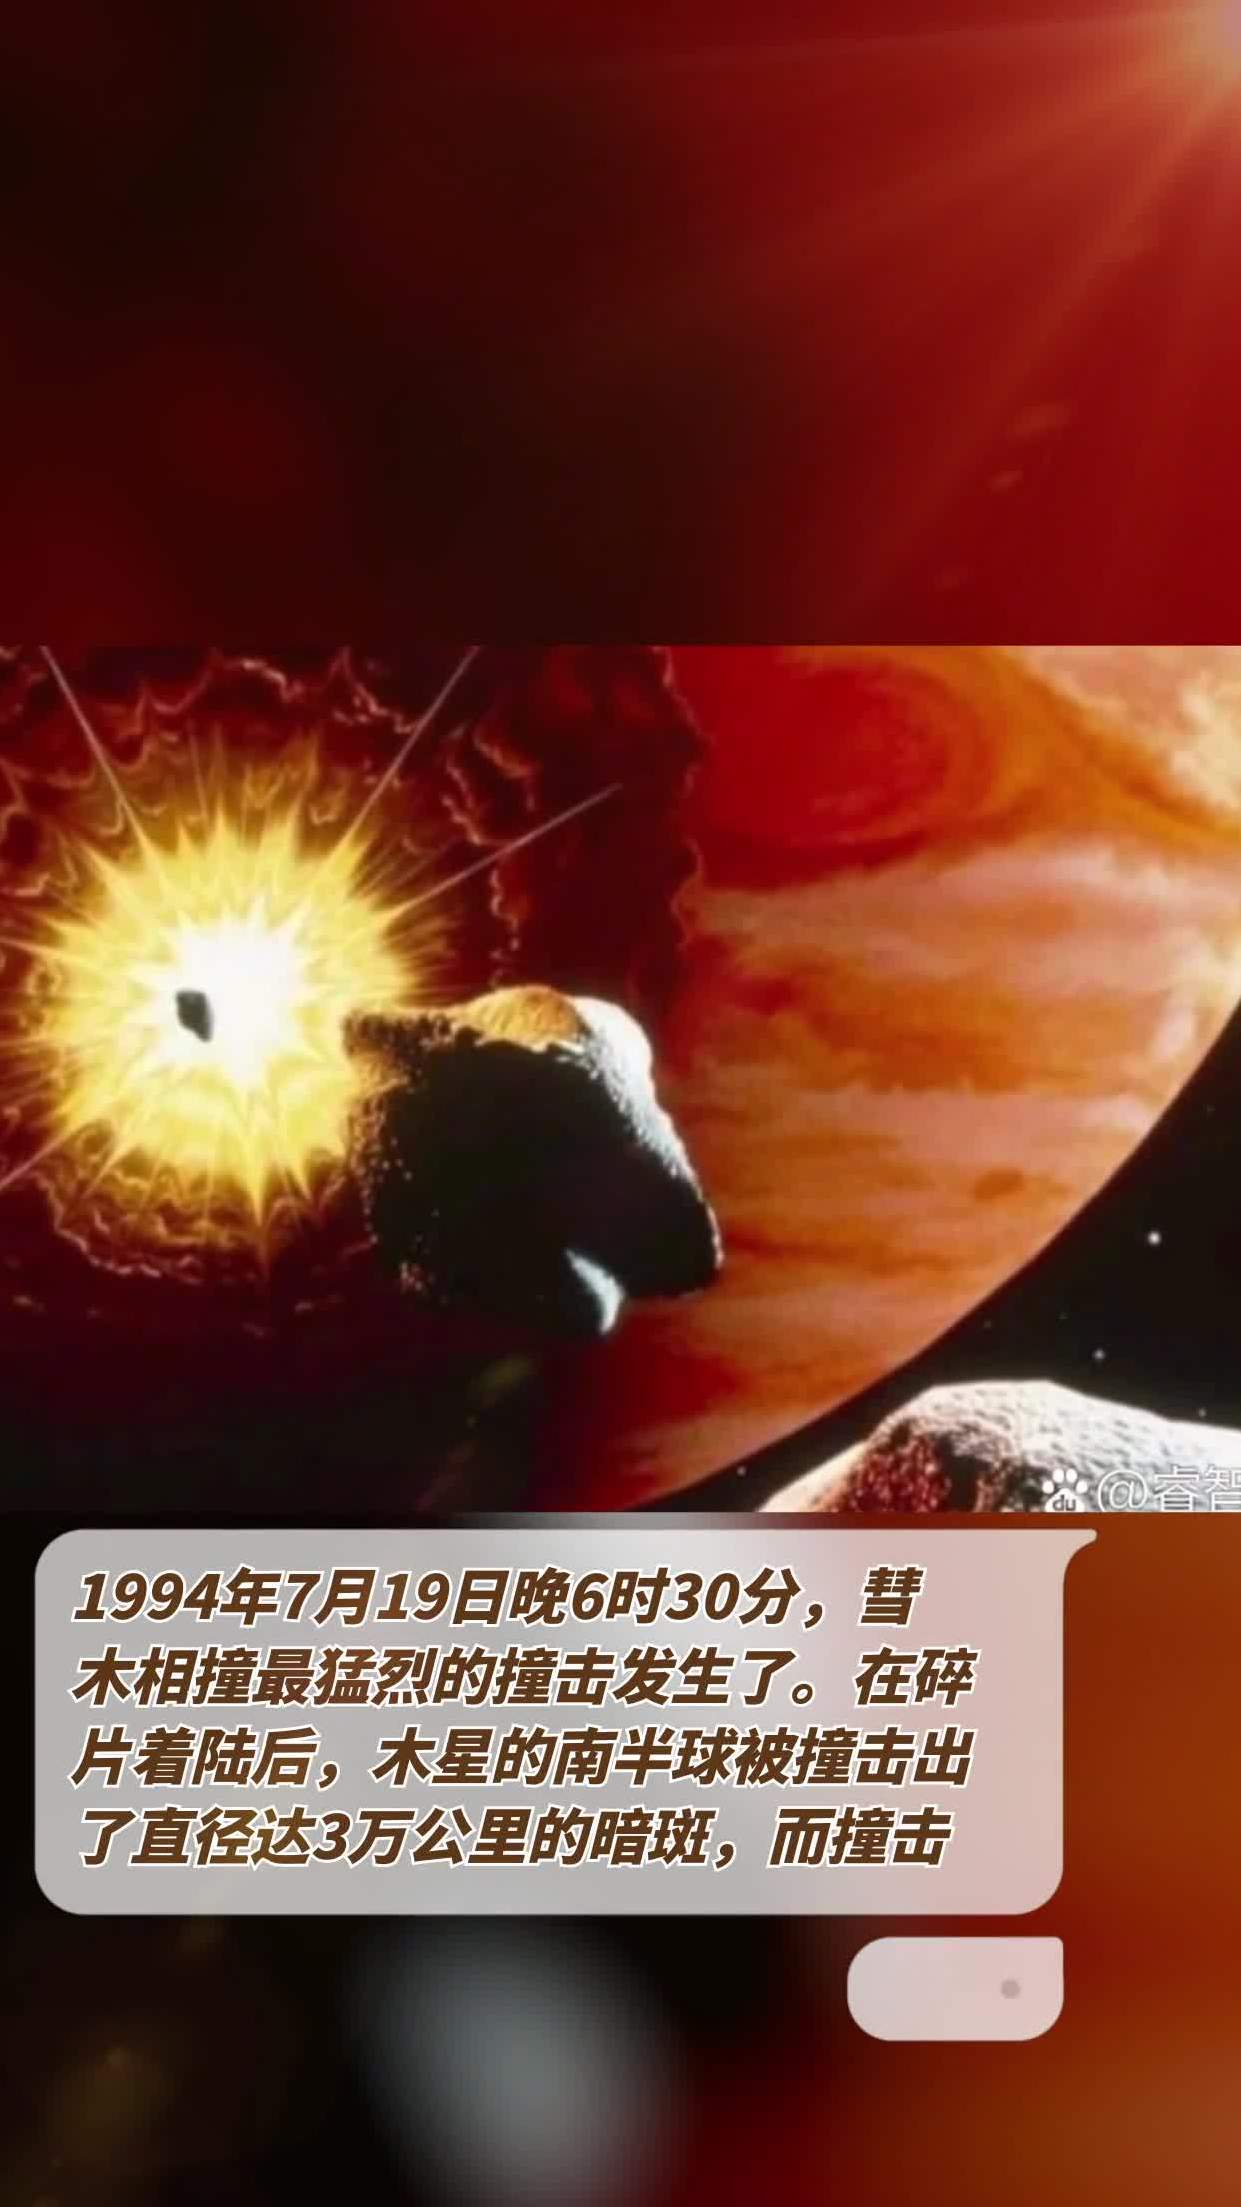 1994年7月19日晚6时30分,彗木相撞最猛烈的撞击发生了